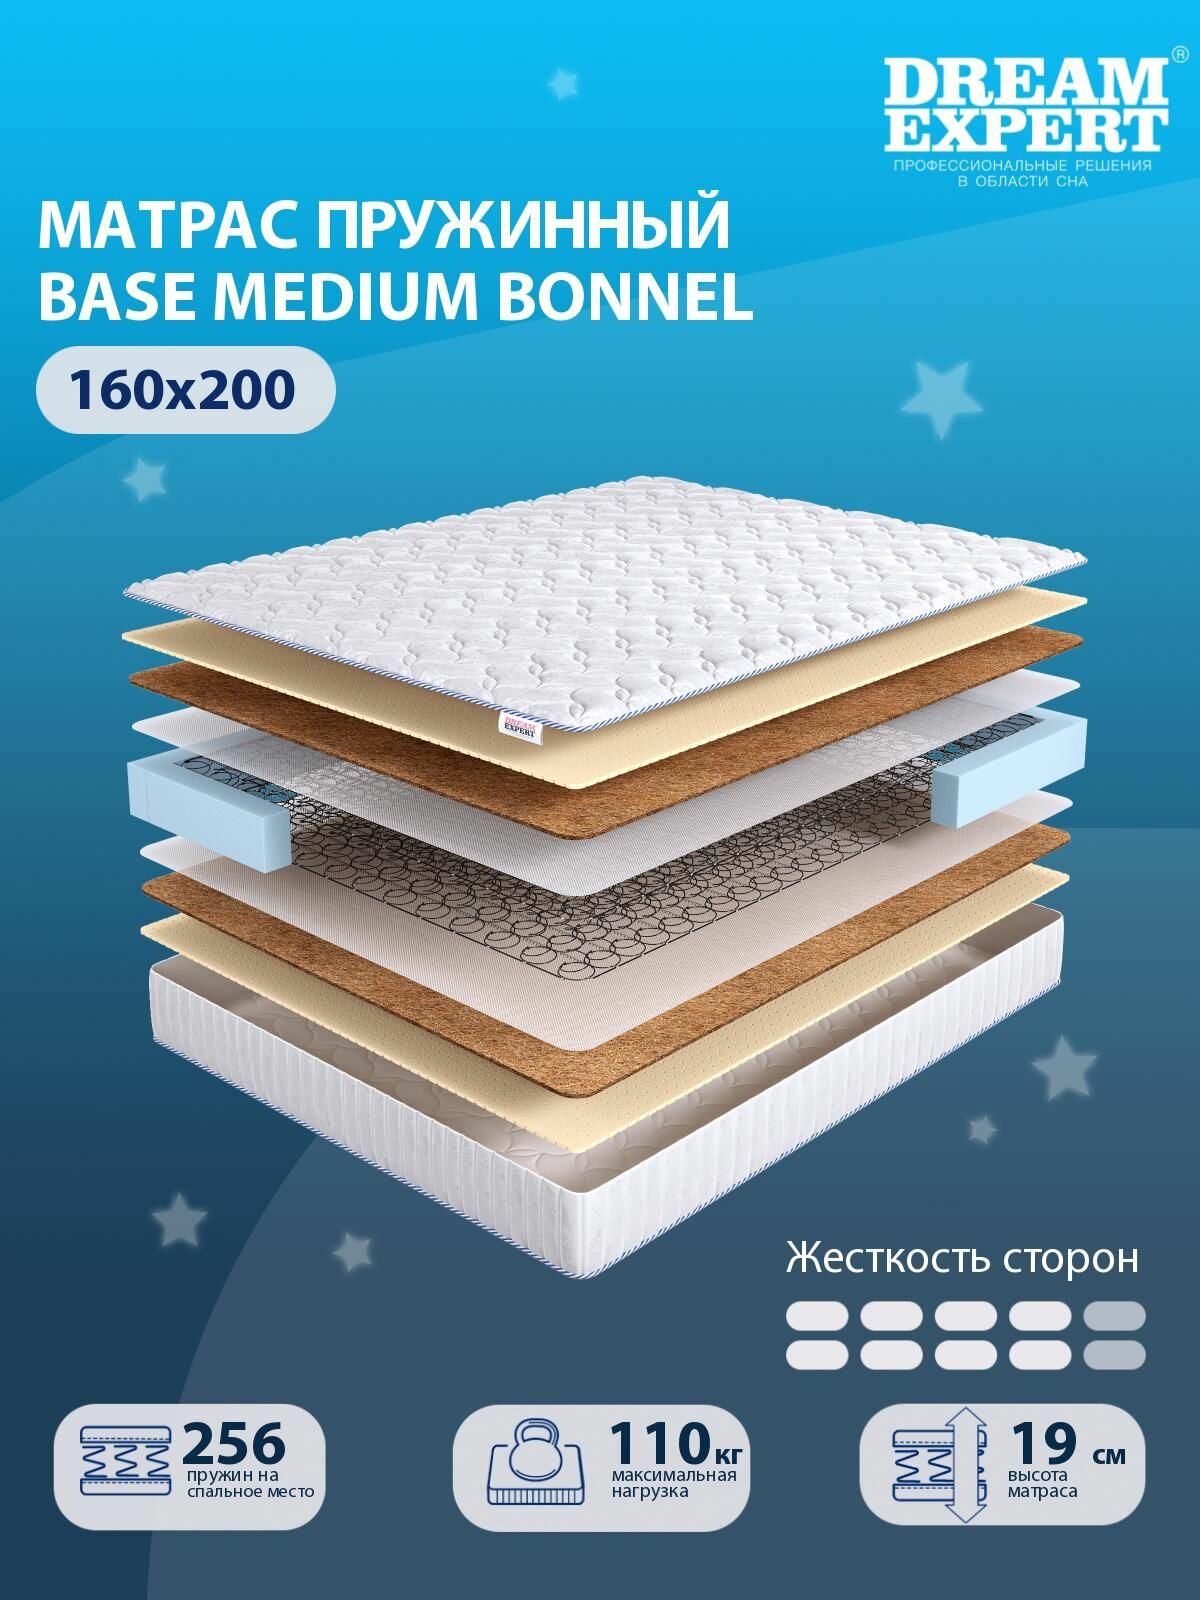 Матрас DreamExpert Base Medium Bonnel выше средней жесткости, двуспальный, зависимый пружинный блок, на кровать 160x200